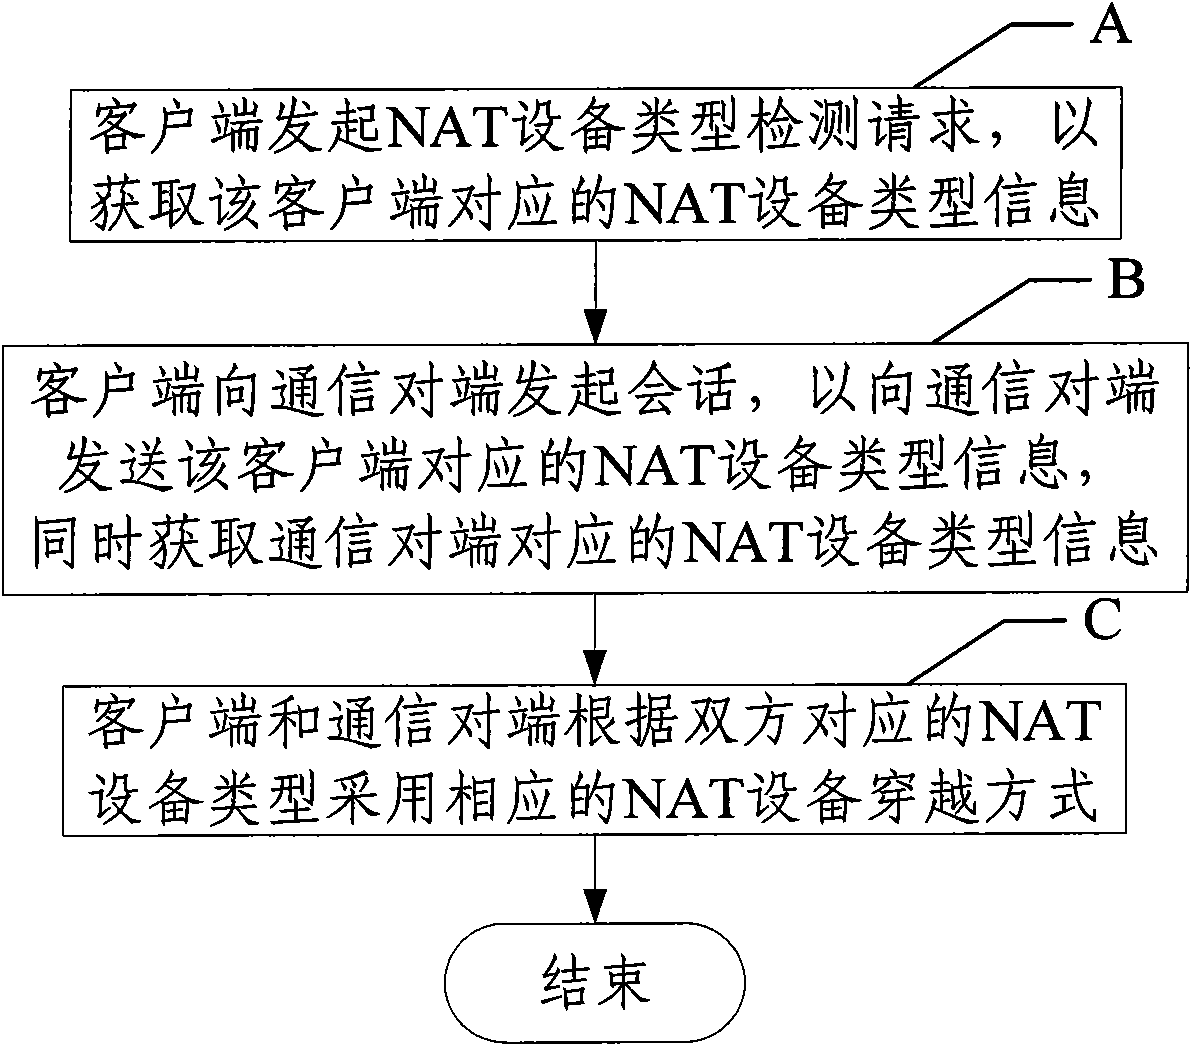 Method for traversing NAT (Network Address Translation) equipment